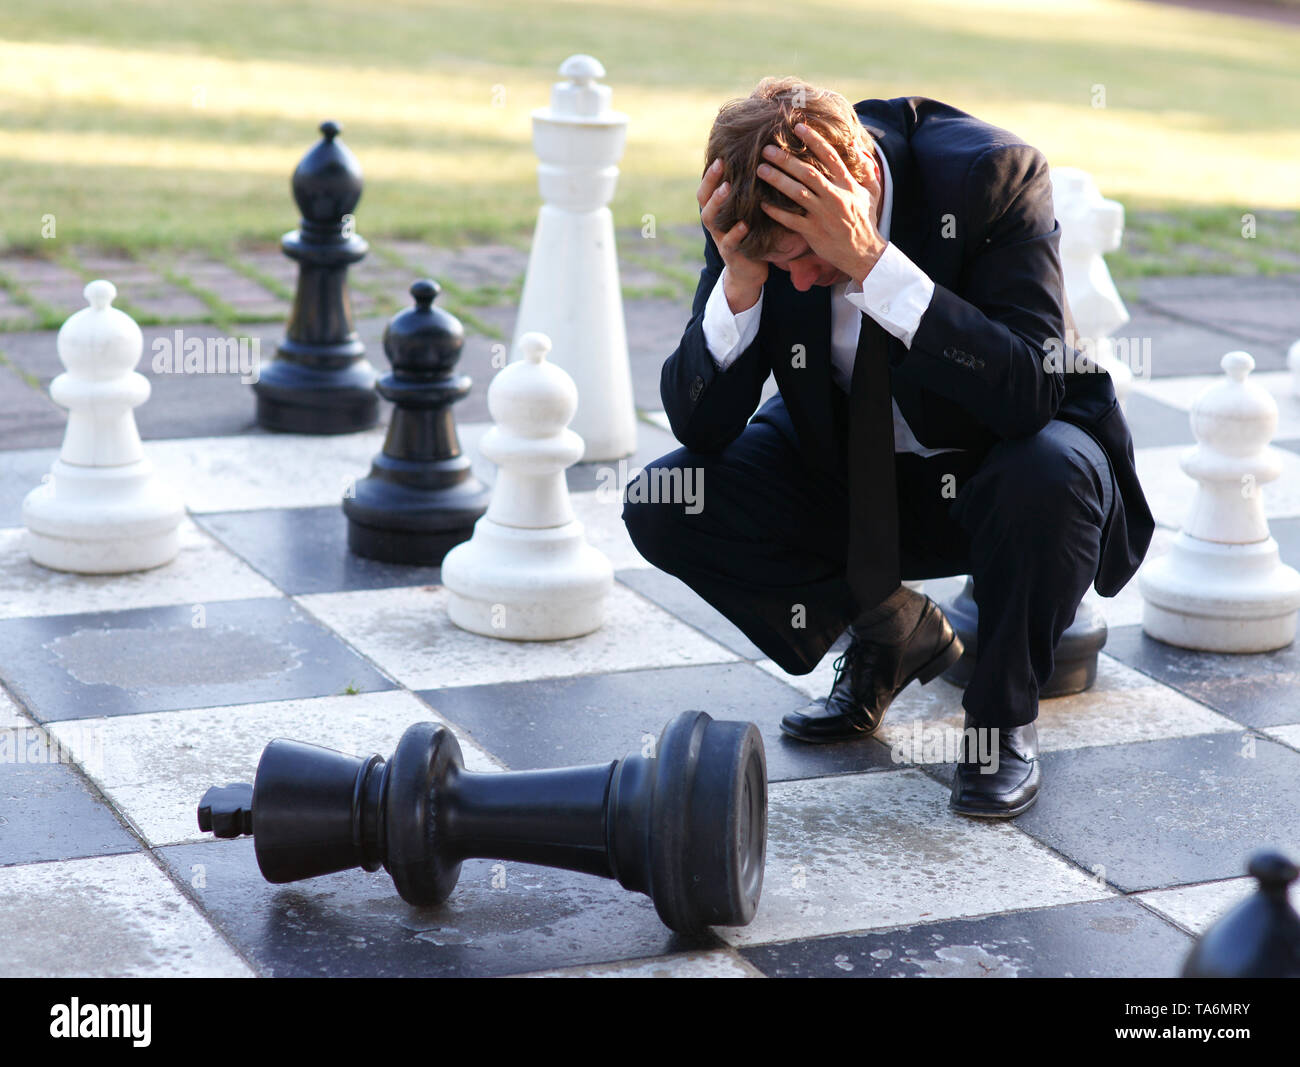 KungFuChess, el ajedrez sin turnos donde se reparten jaque mates como panes